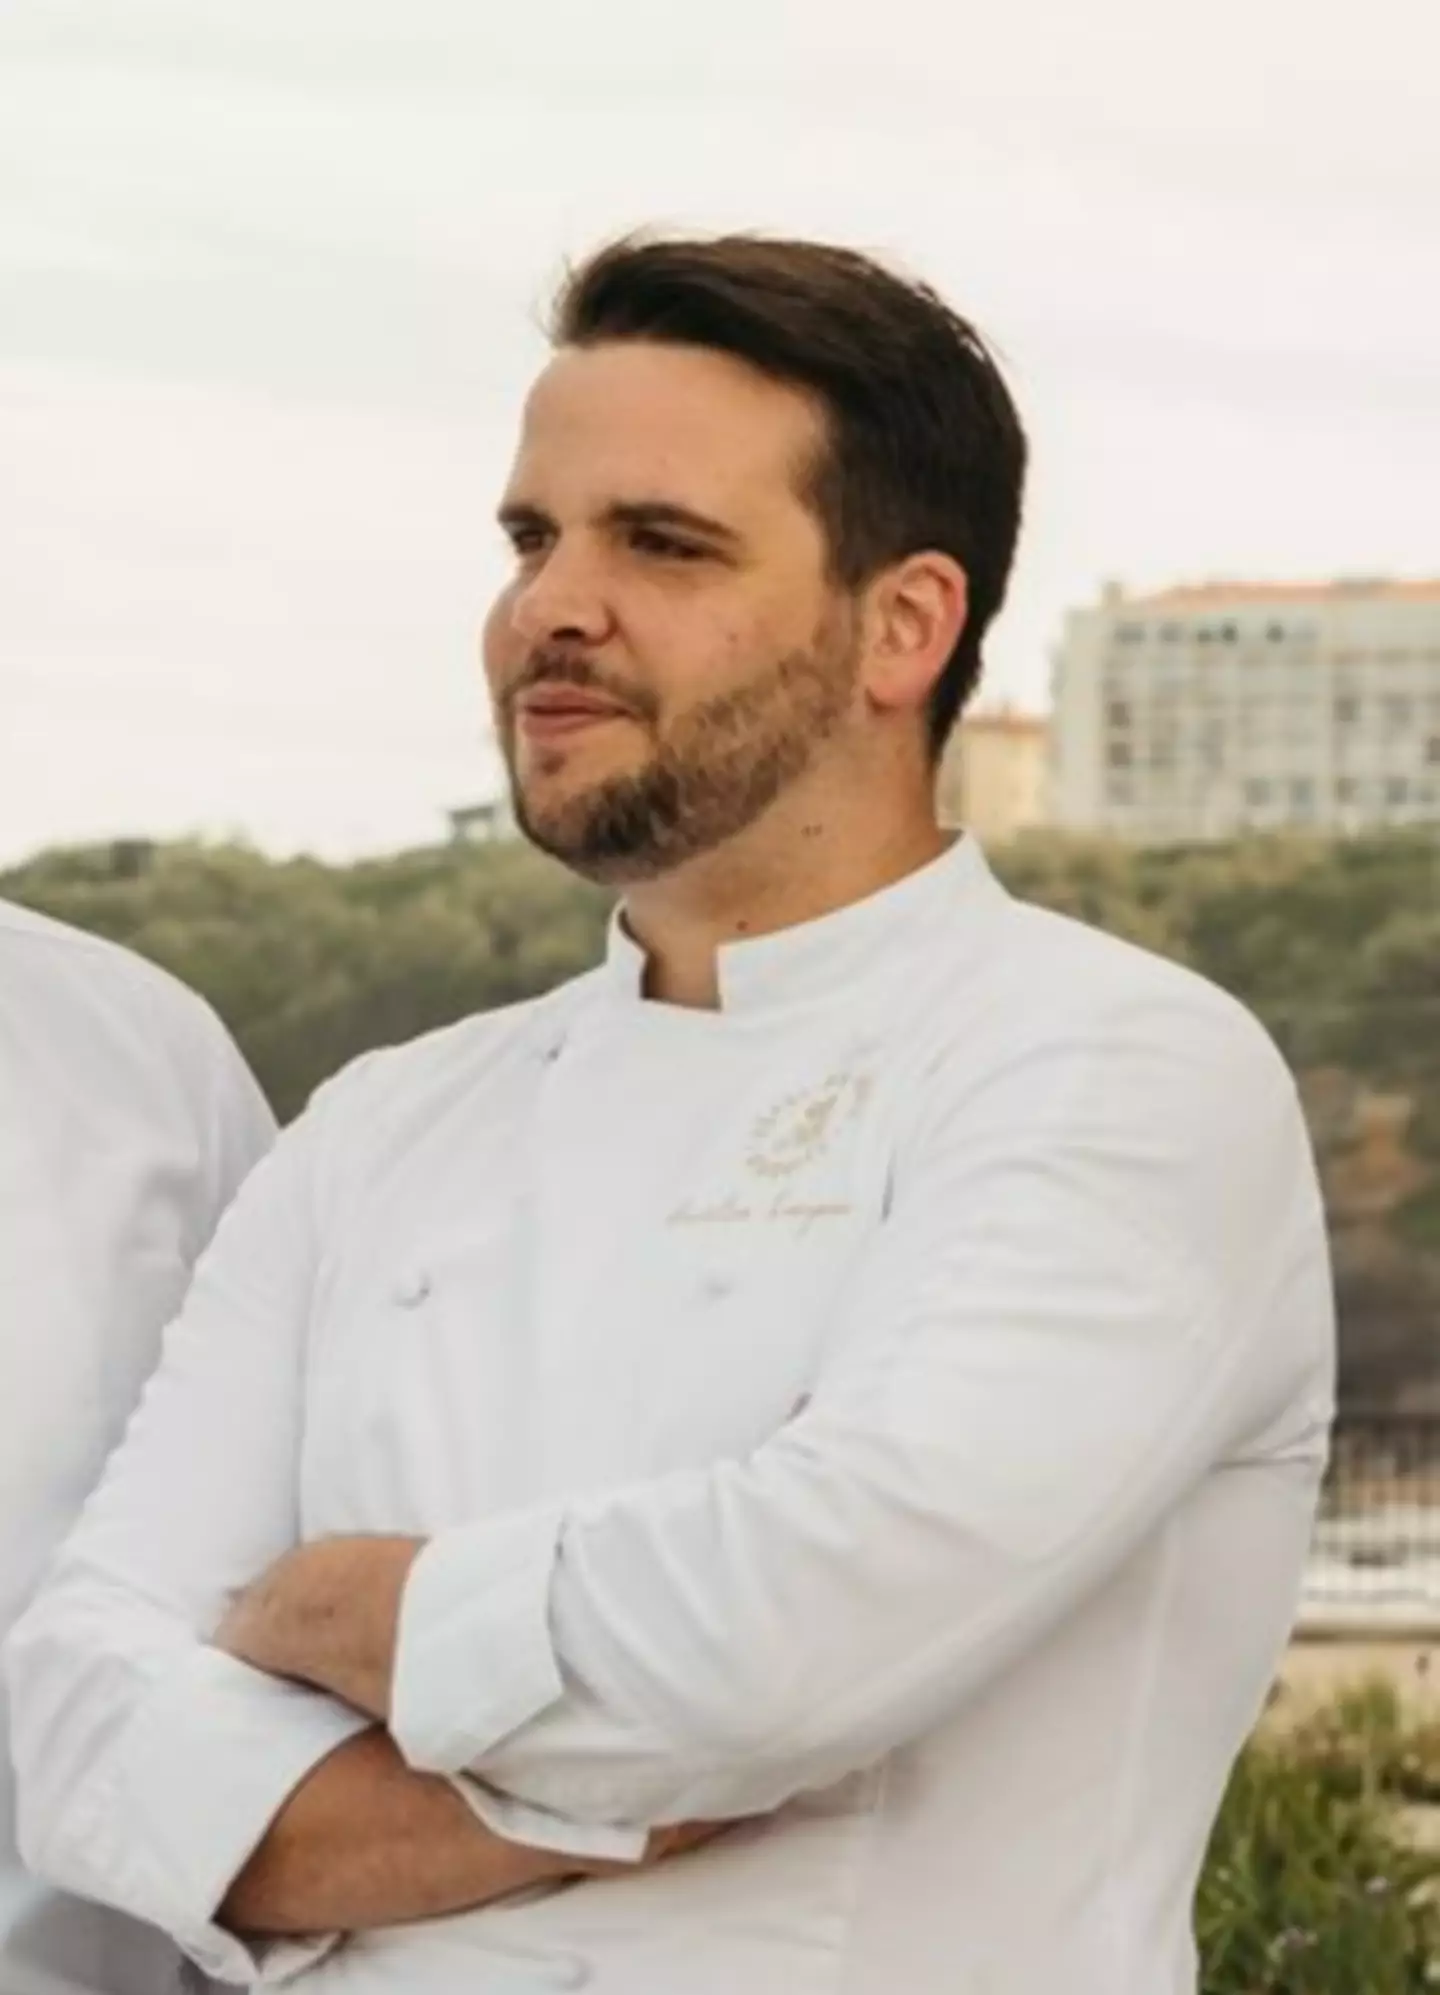 Chef Aurélien Largeau has since left the hotel's restaurant.